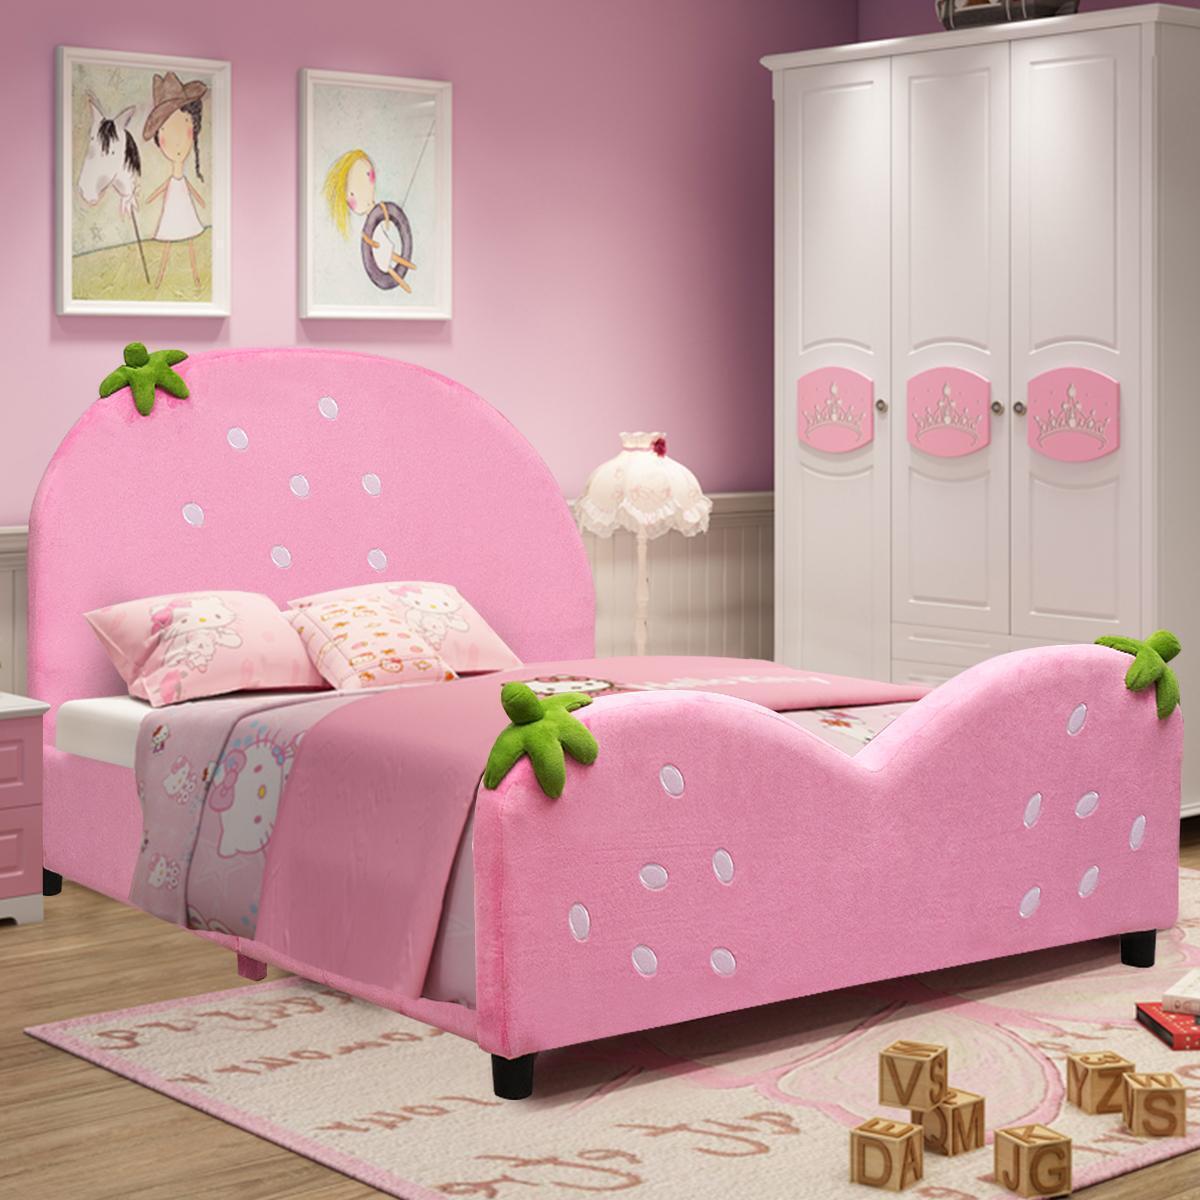 Costway Kids Children Upholstered Platform Toddler Bed Bedroom Furniture Berry Pattern alternate image